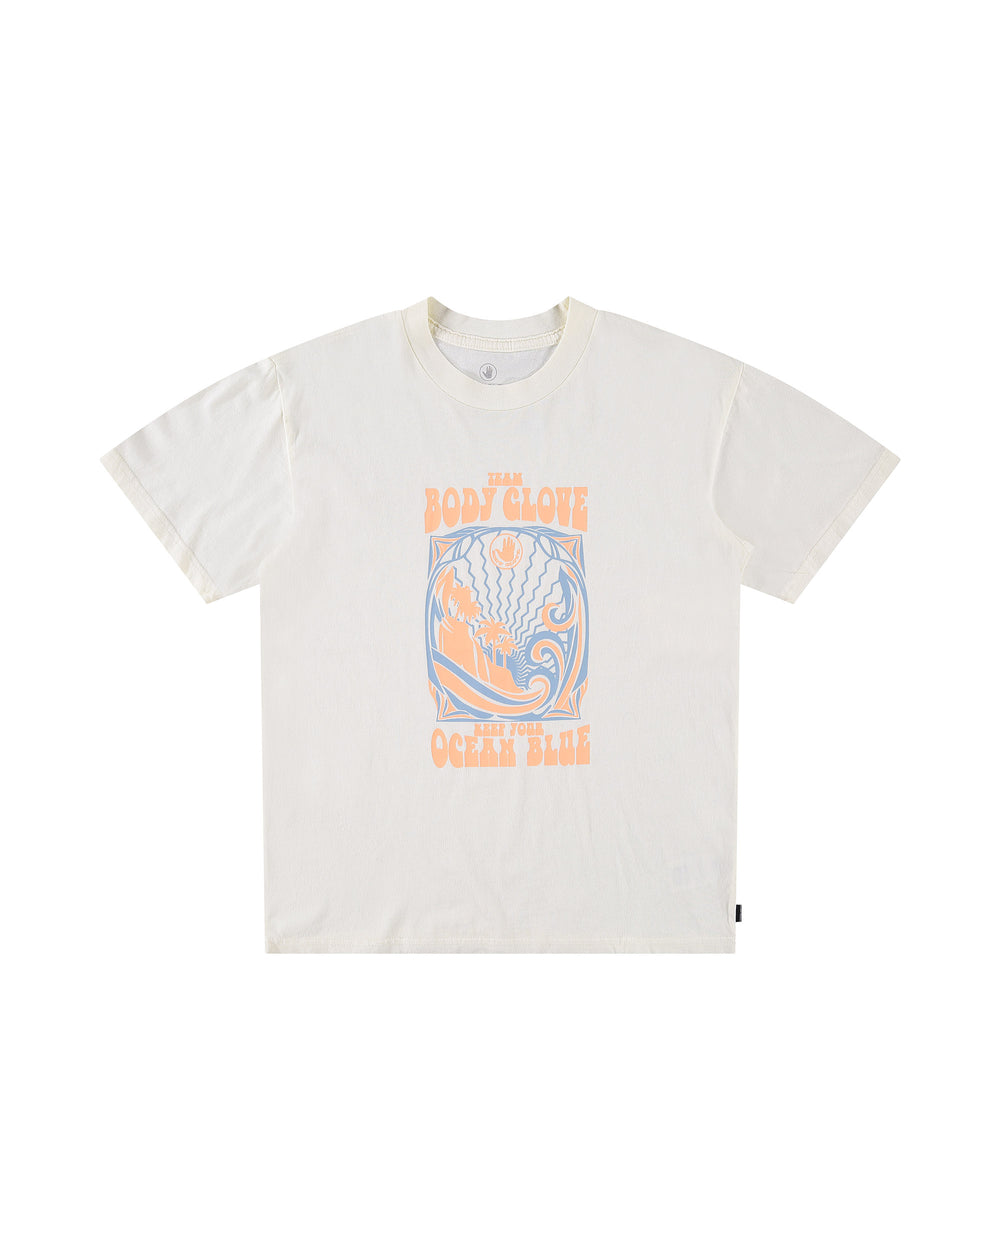 Keep The Ocean Blue T-Shirt - Cream